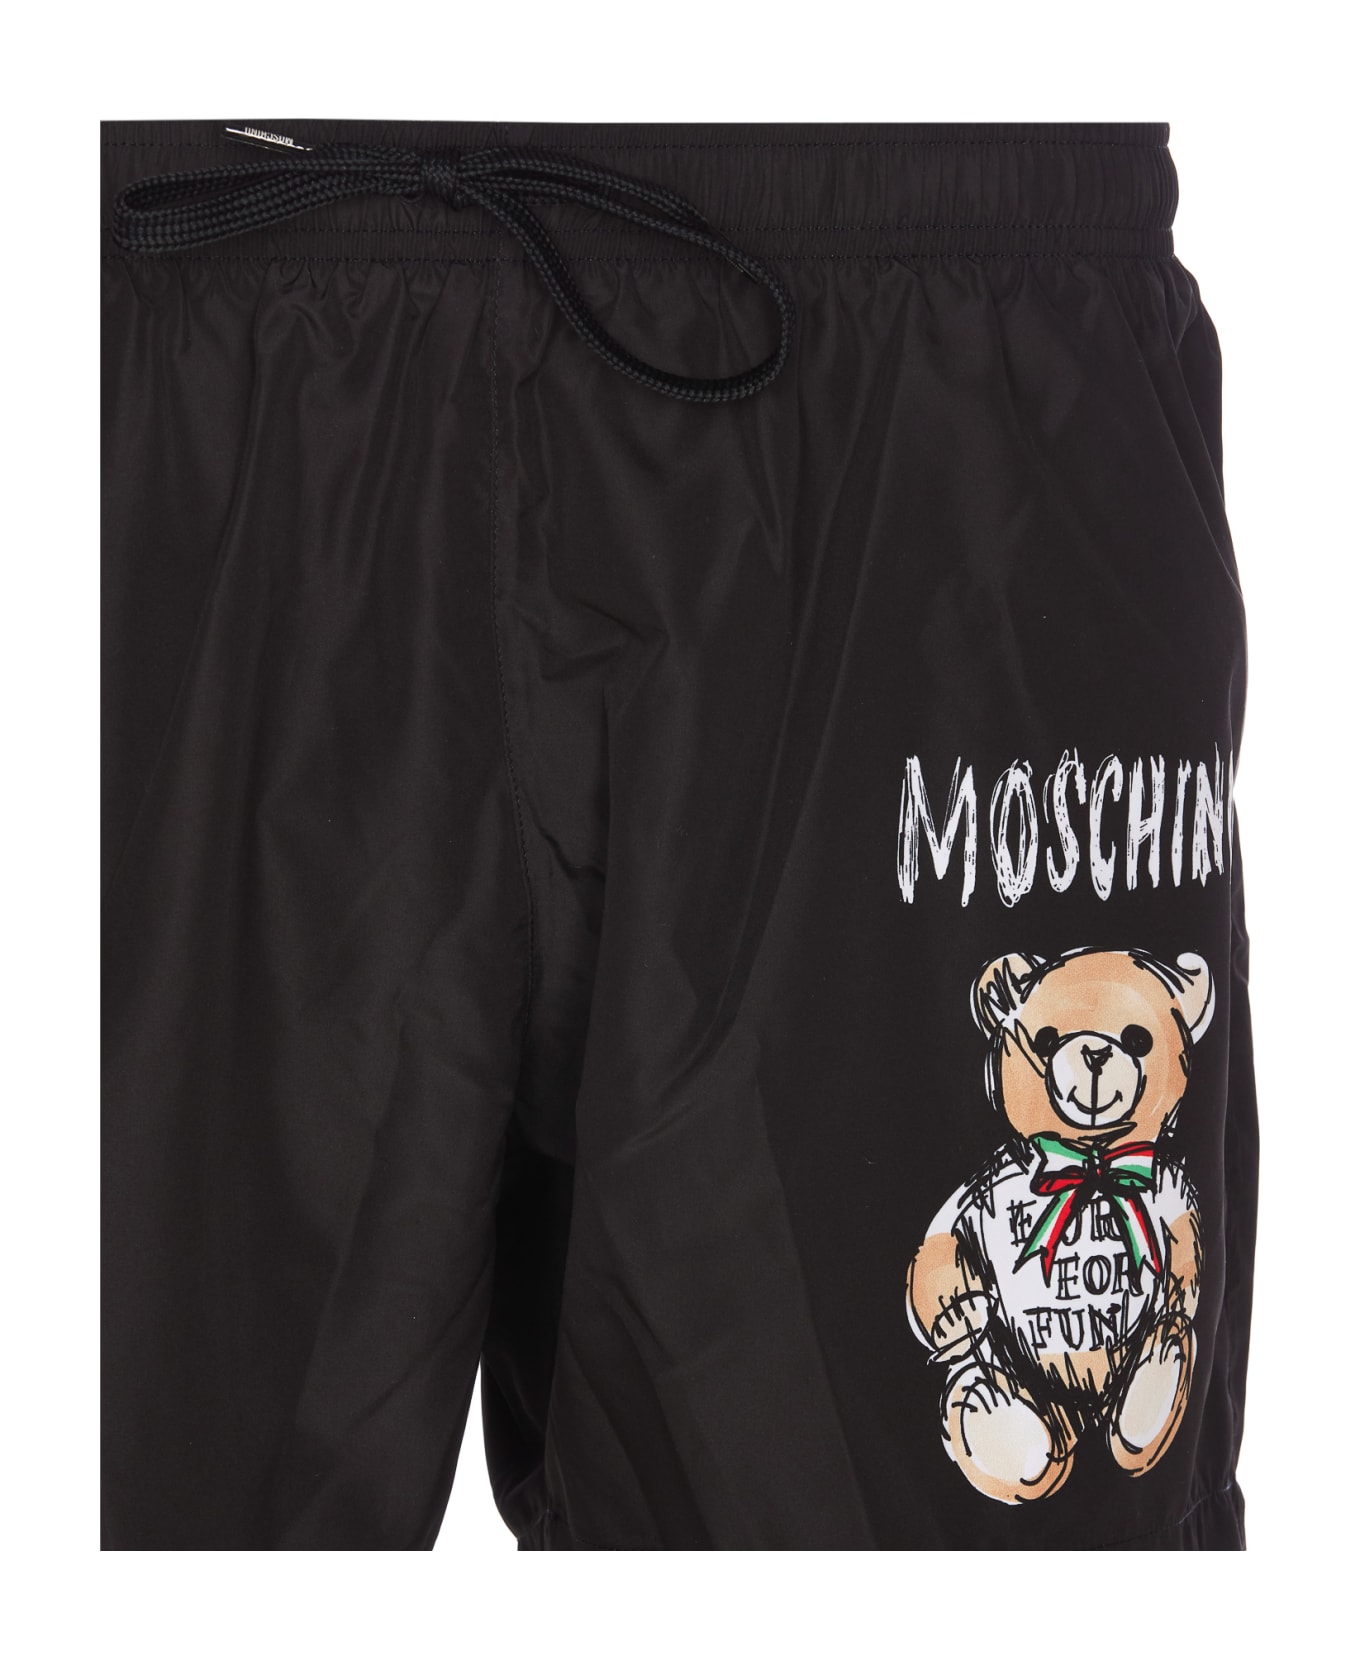 Moschino Drawn Teddy Bear Swimwear - Black